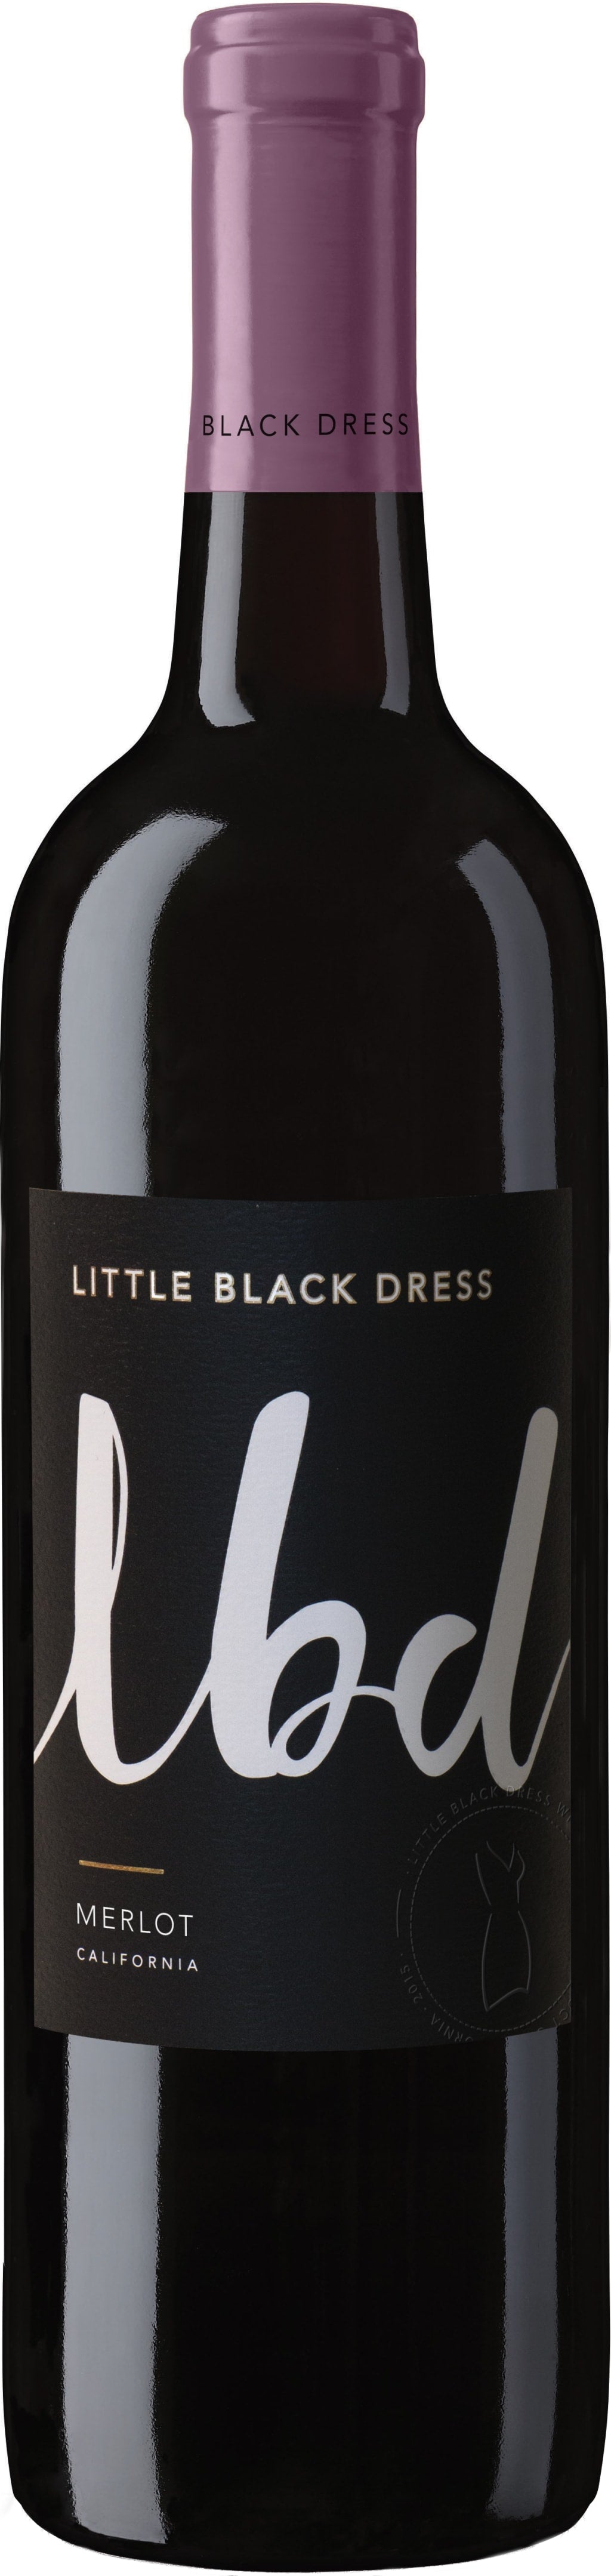 Little Black Dress Merlot 2016